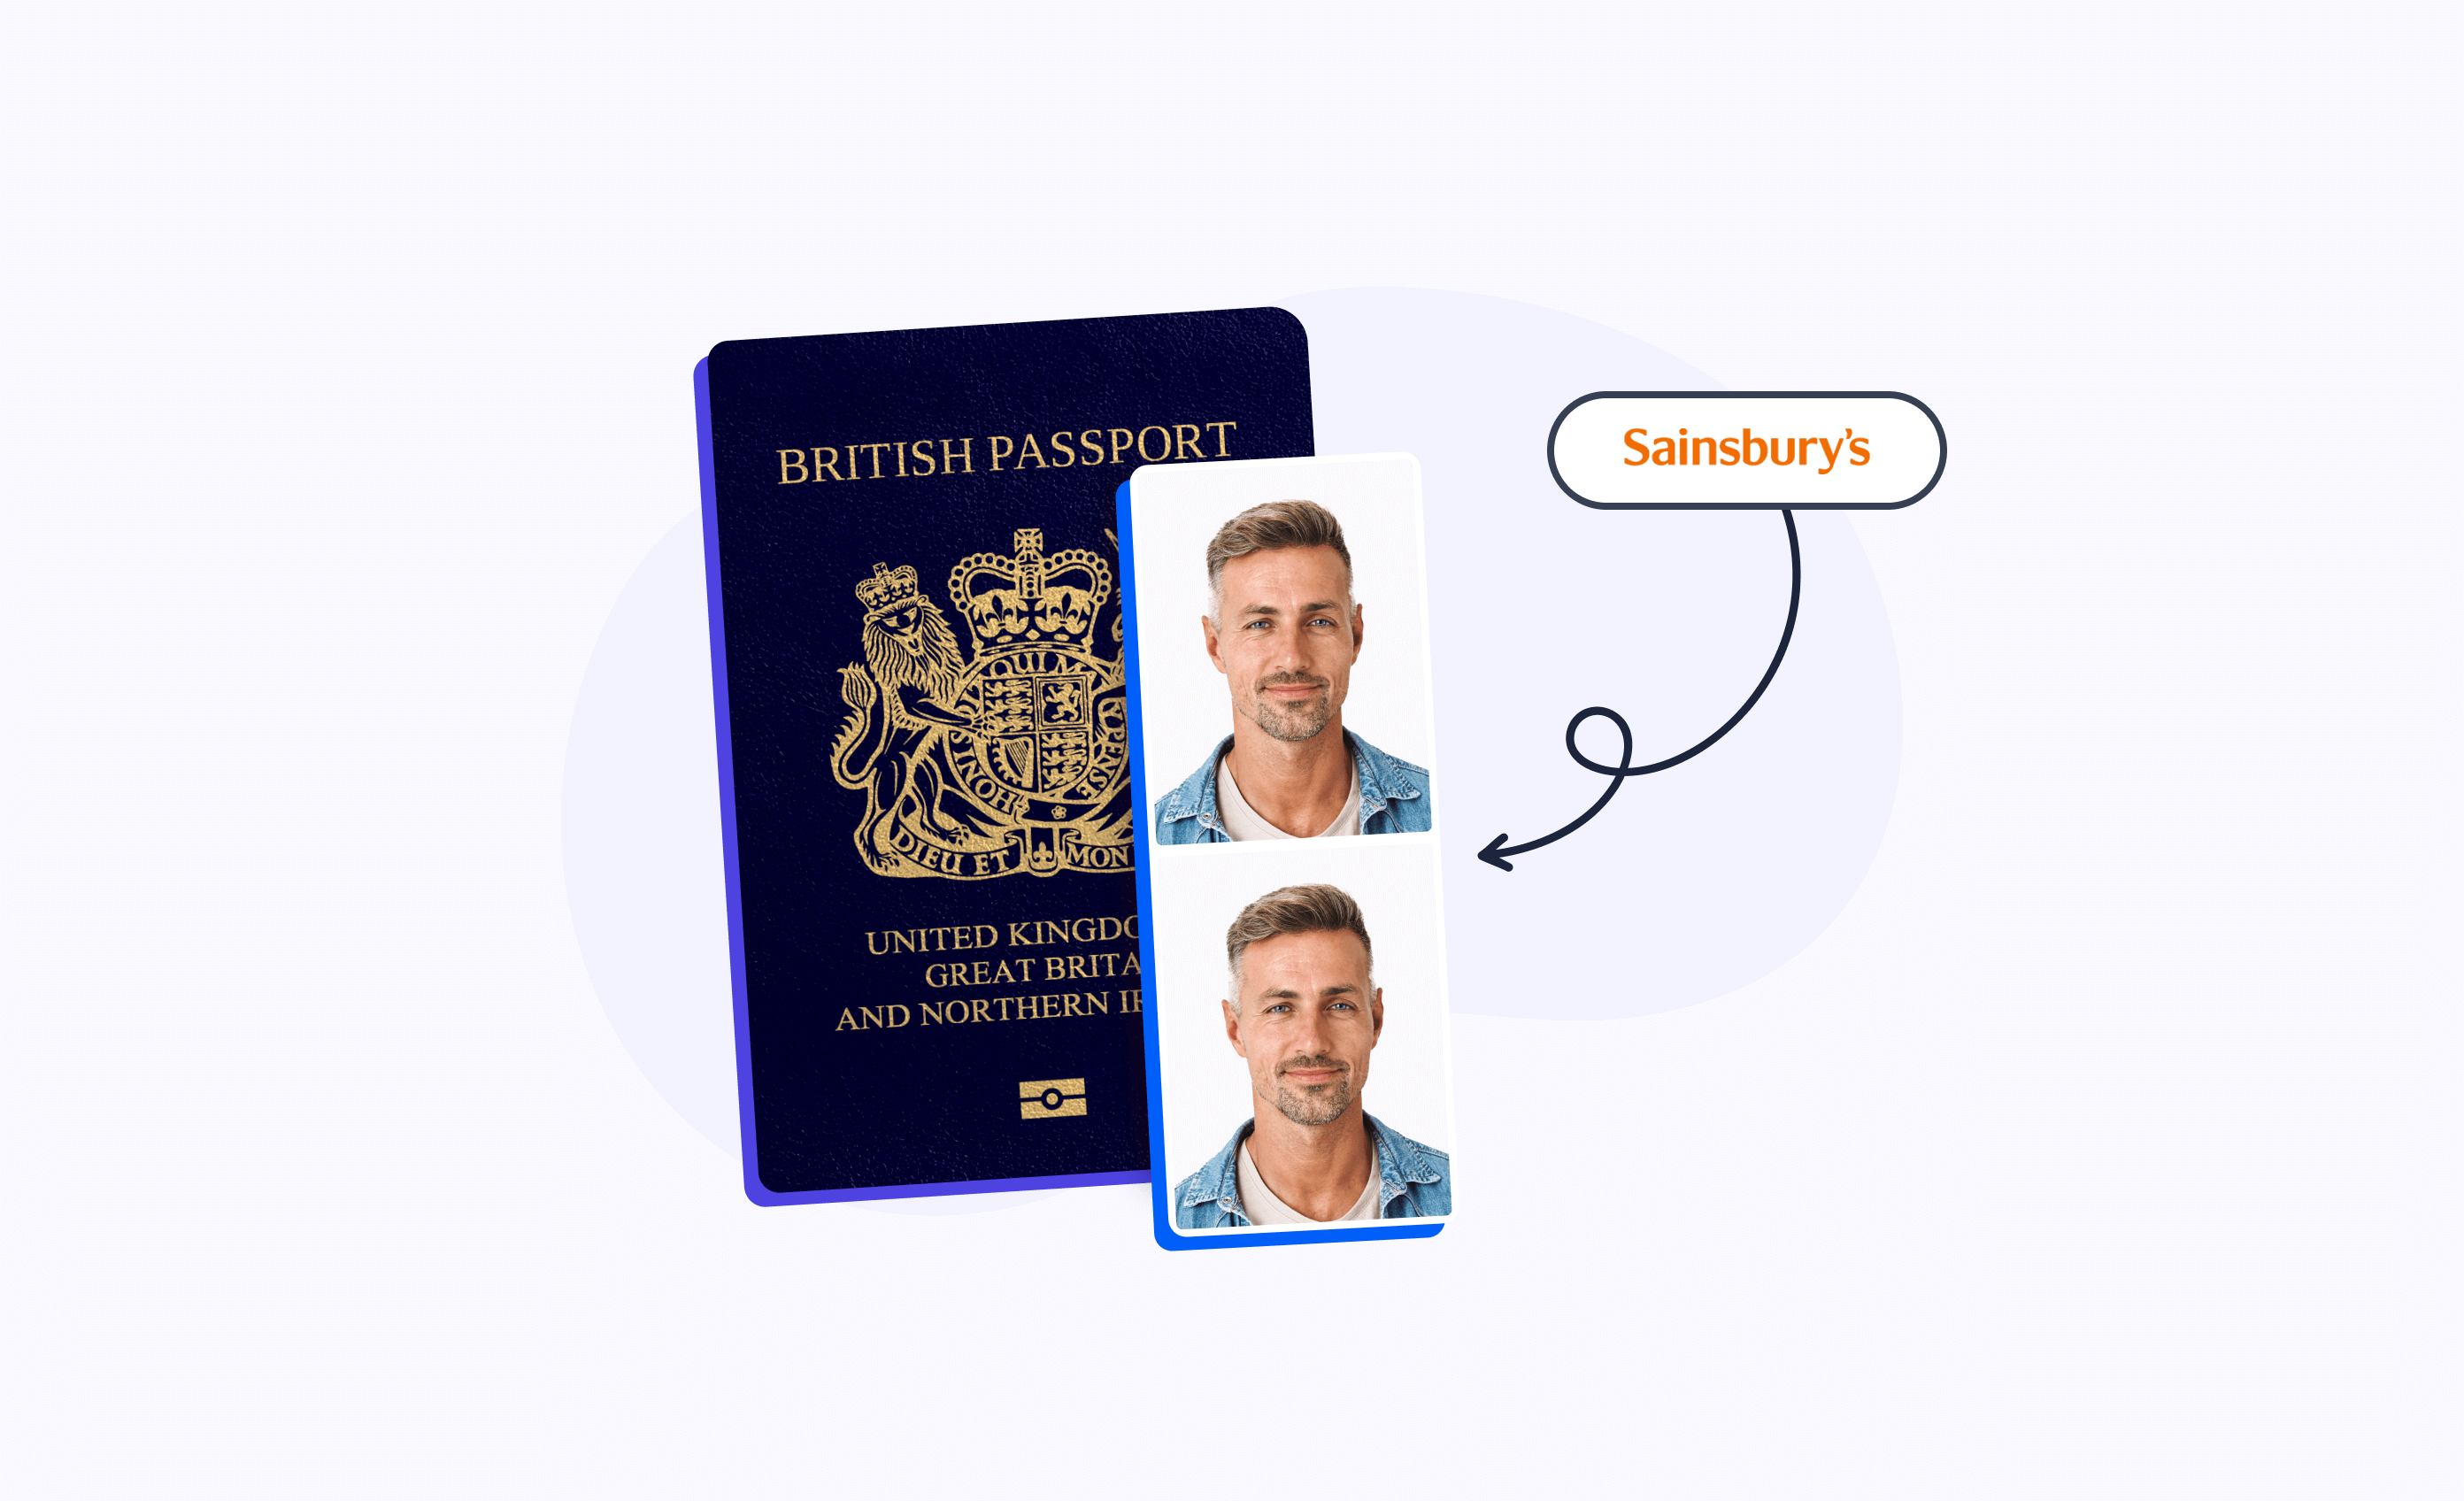 British passport photos at Sainsbury’s.